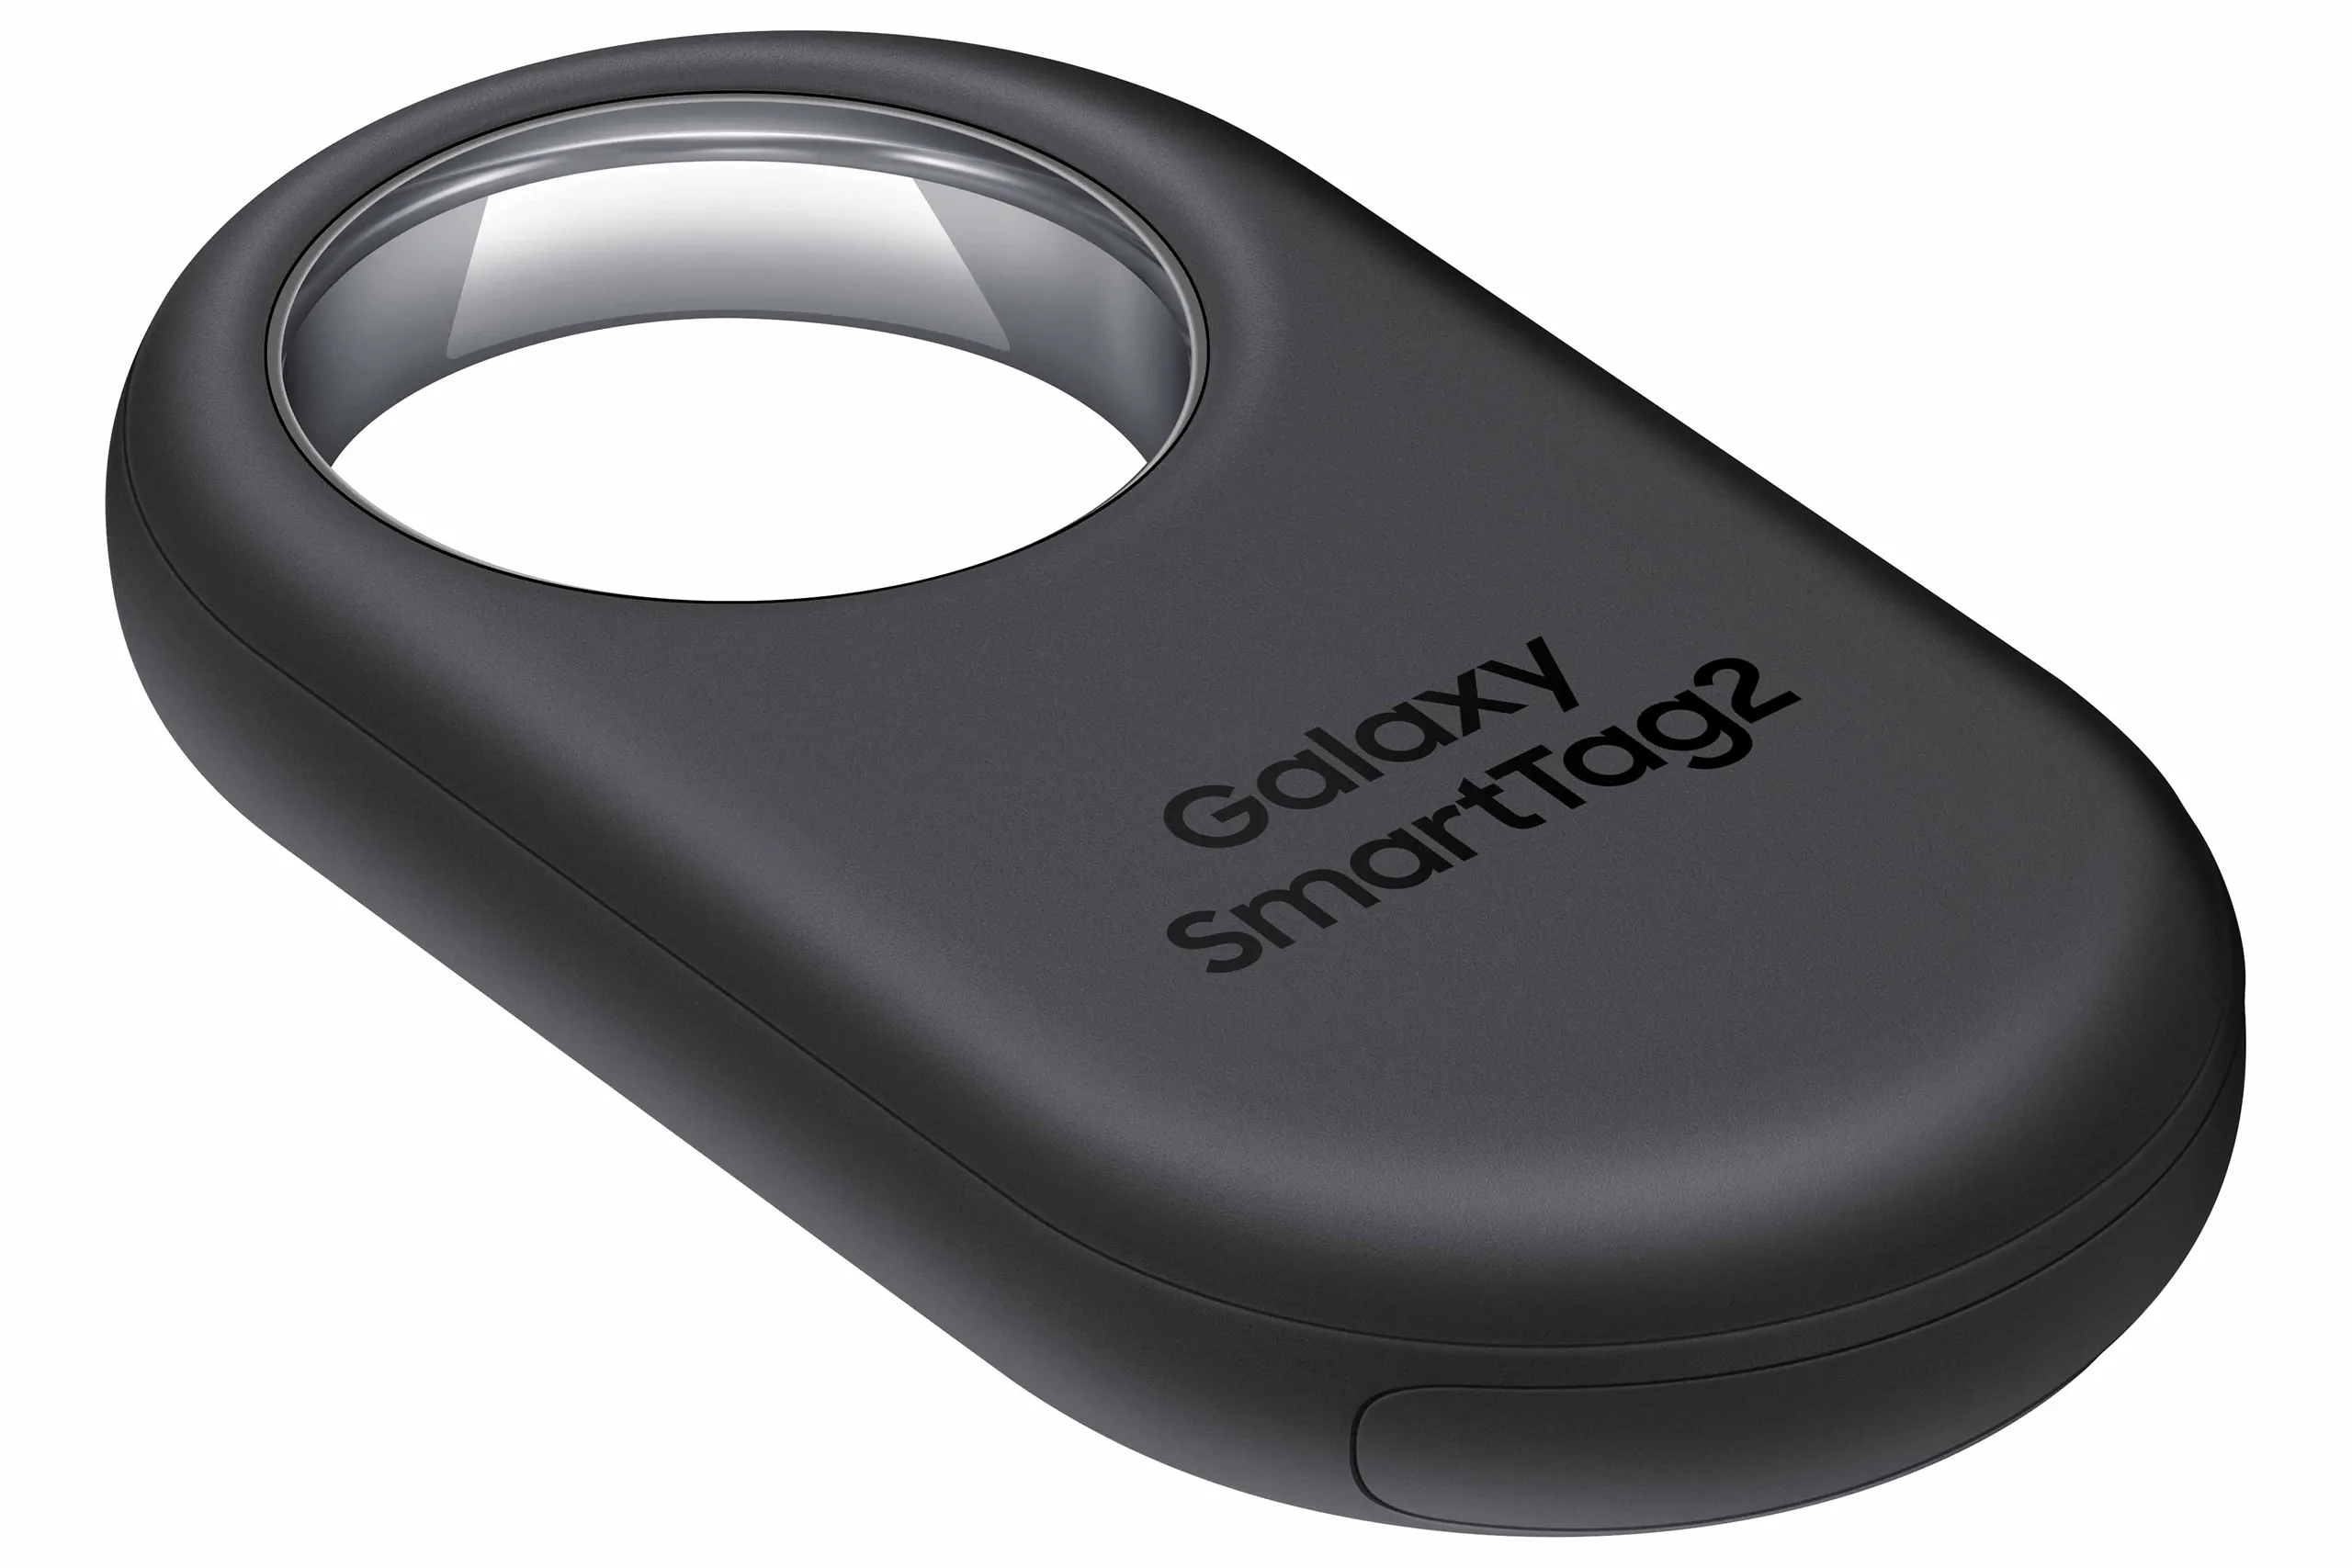 Samsung ra mắt Galaxy SmartTag2: Tăng cường khả năng tìm kiếm, bảo mật tối ưu